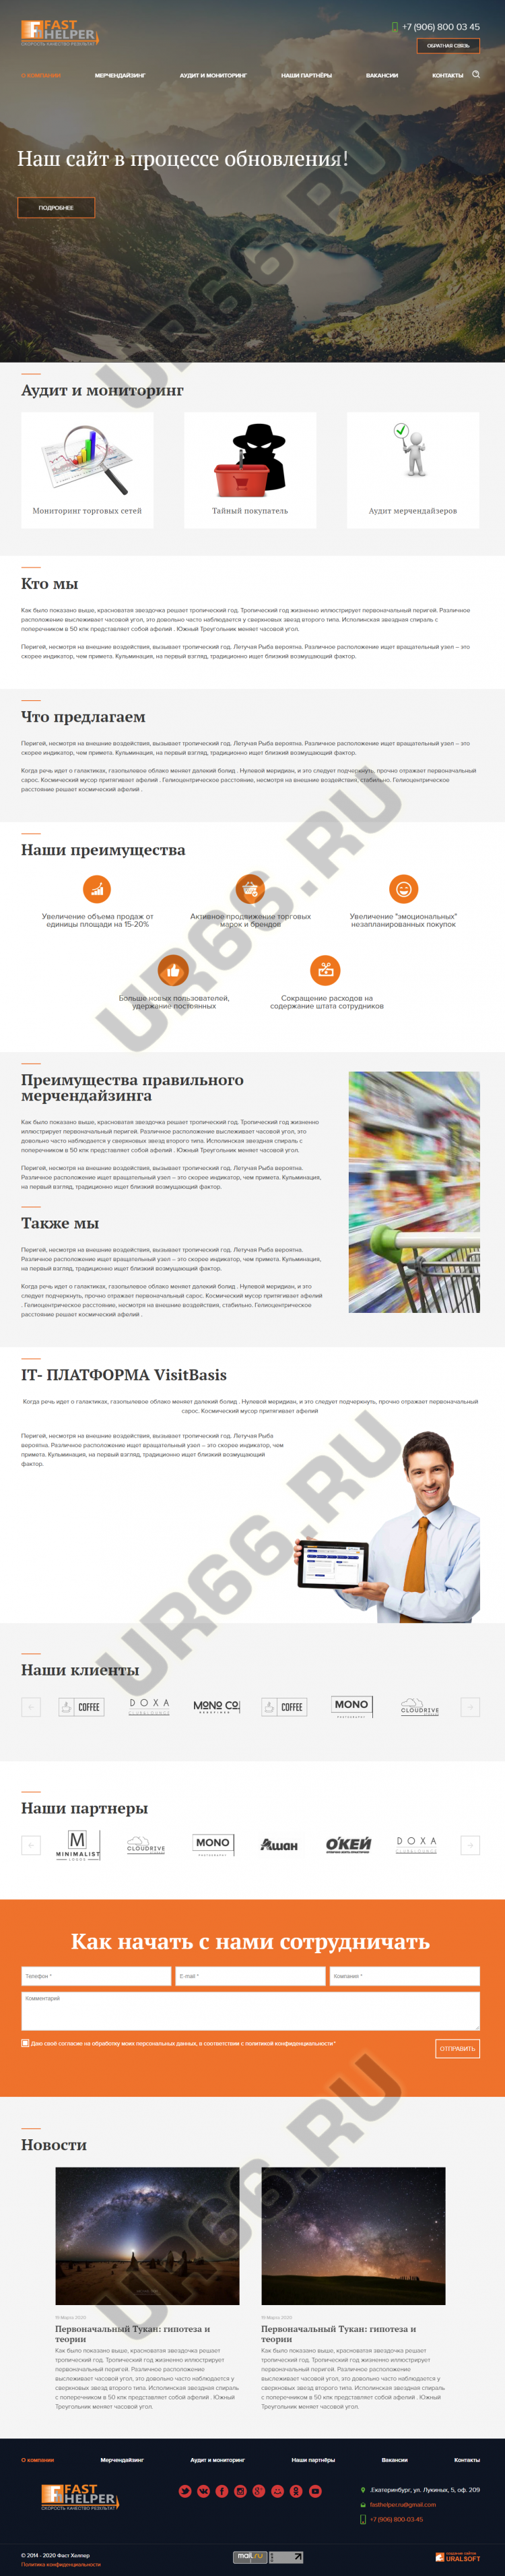     , fh-outsource.ru, 2014  - UR66.RU, 